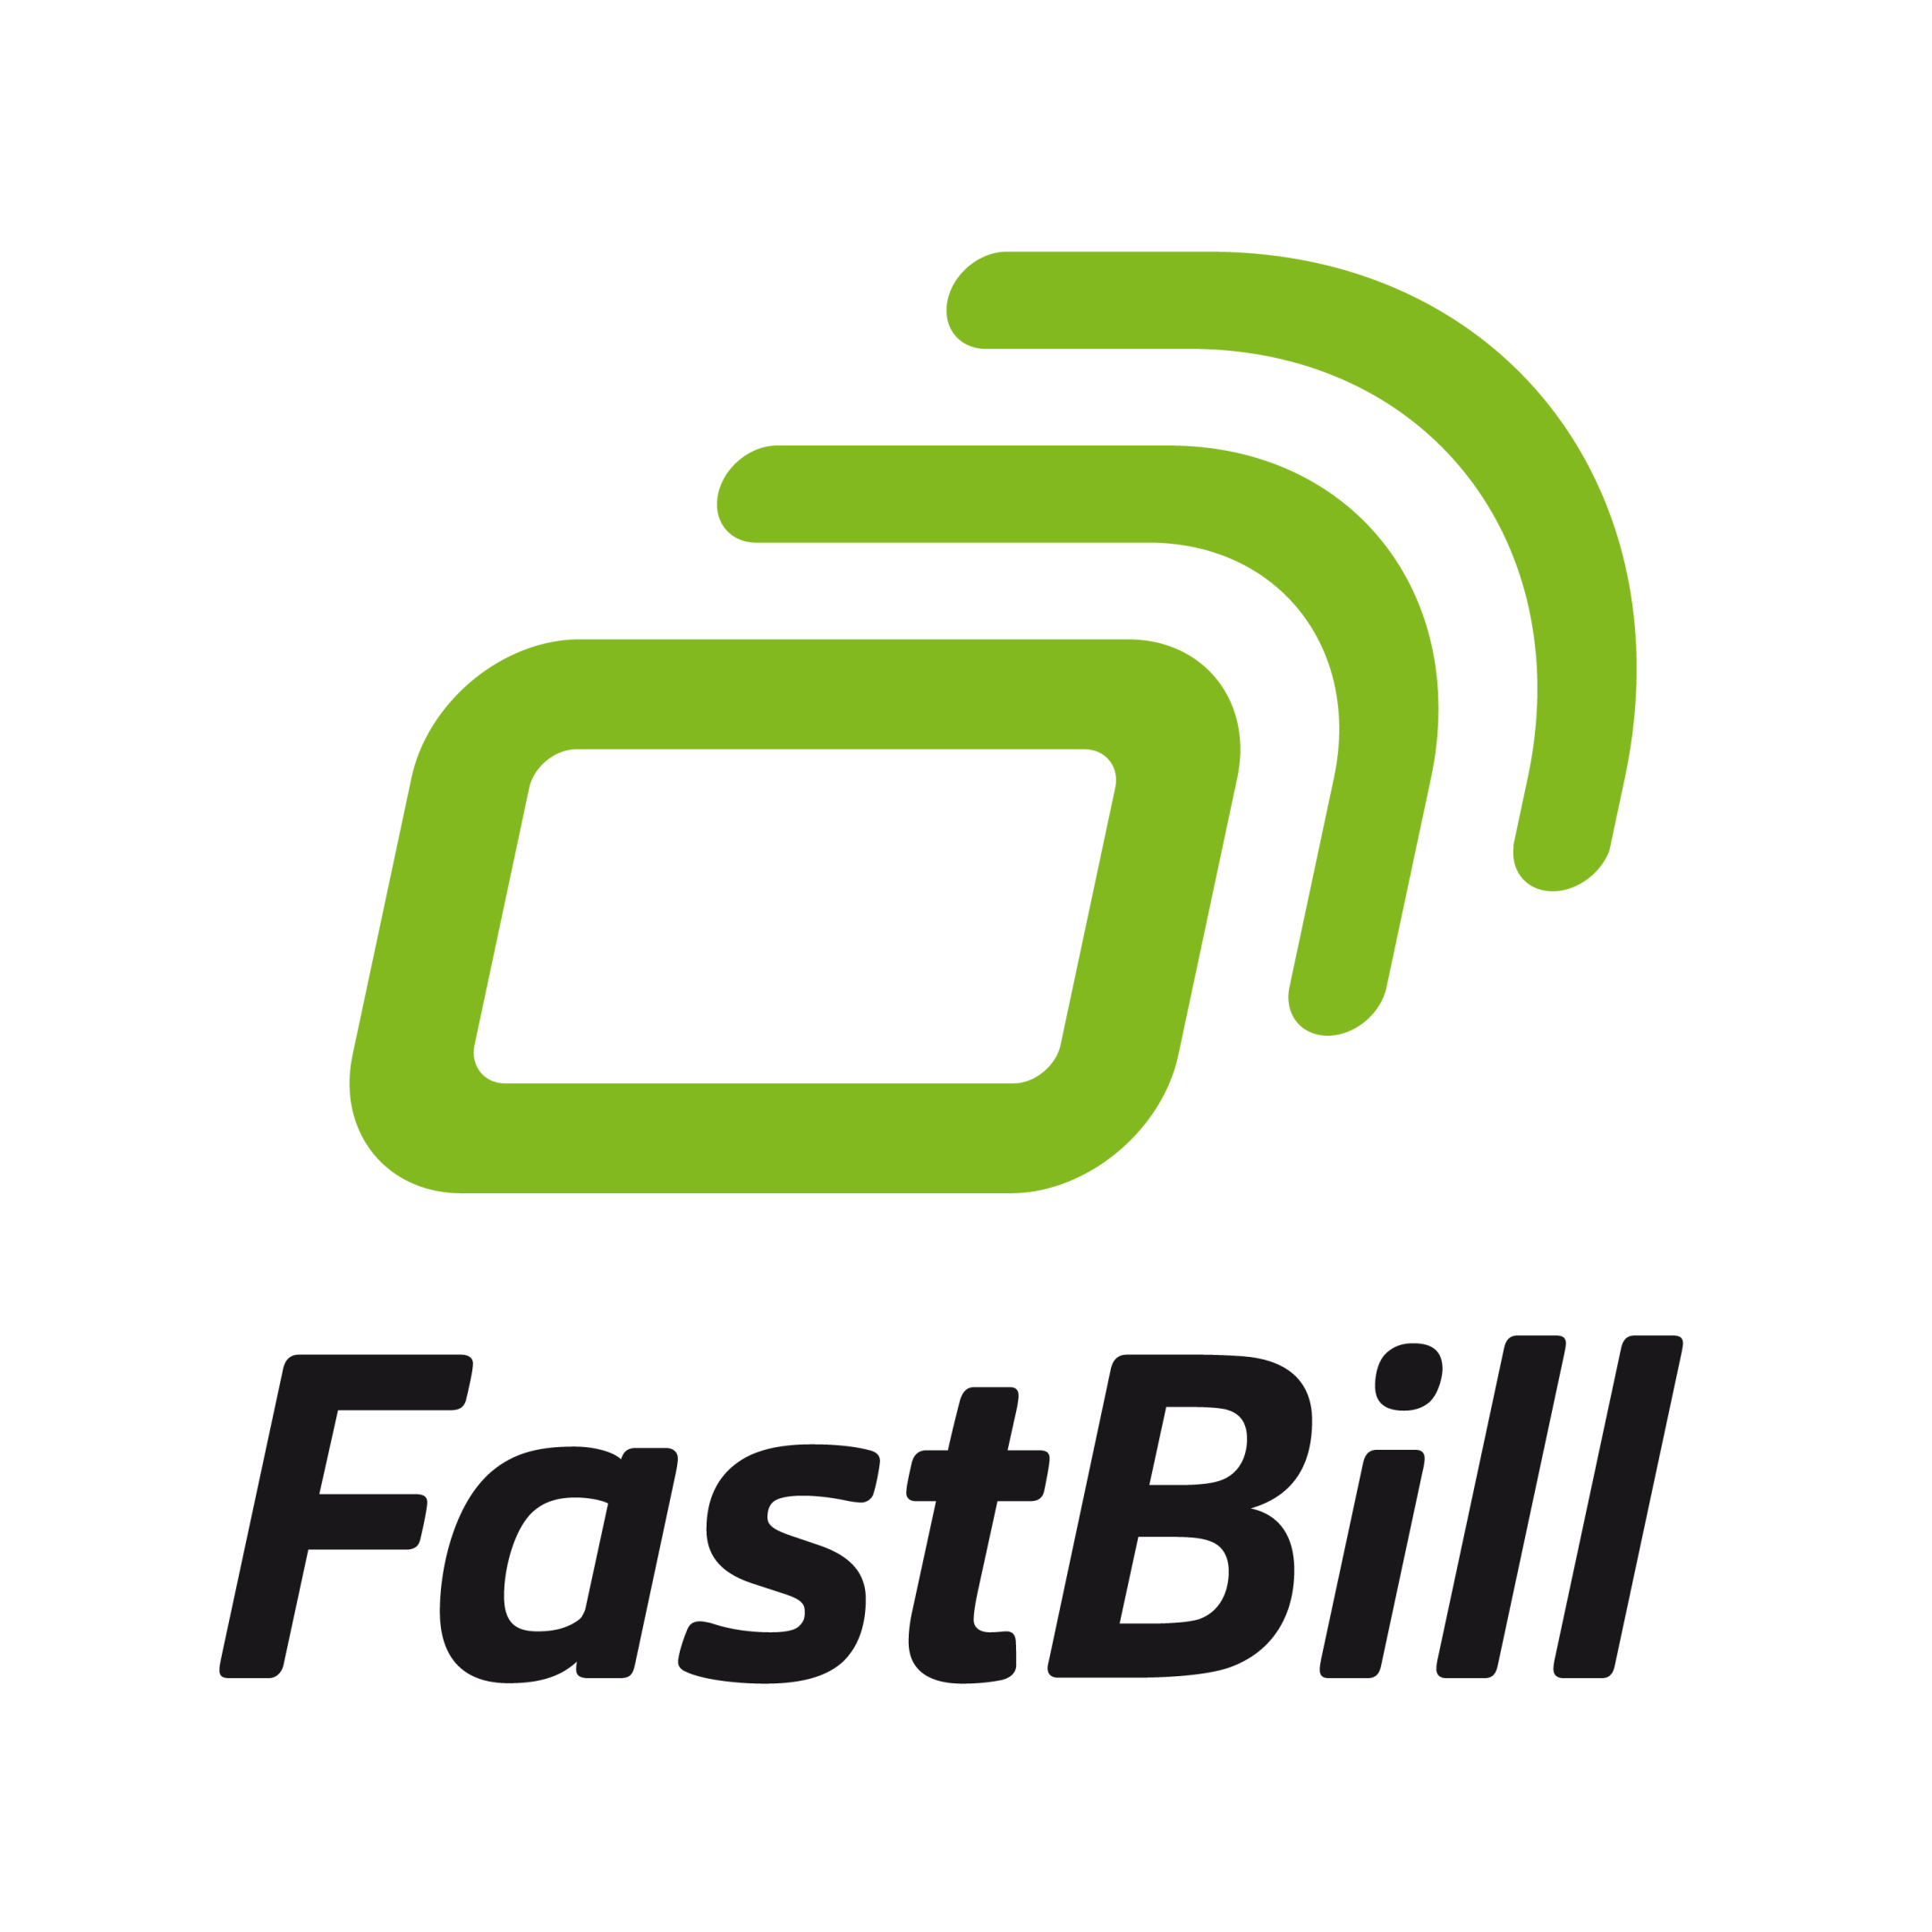 (c) Fastbill.com